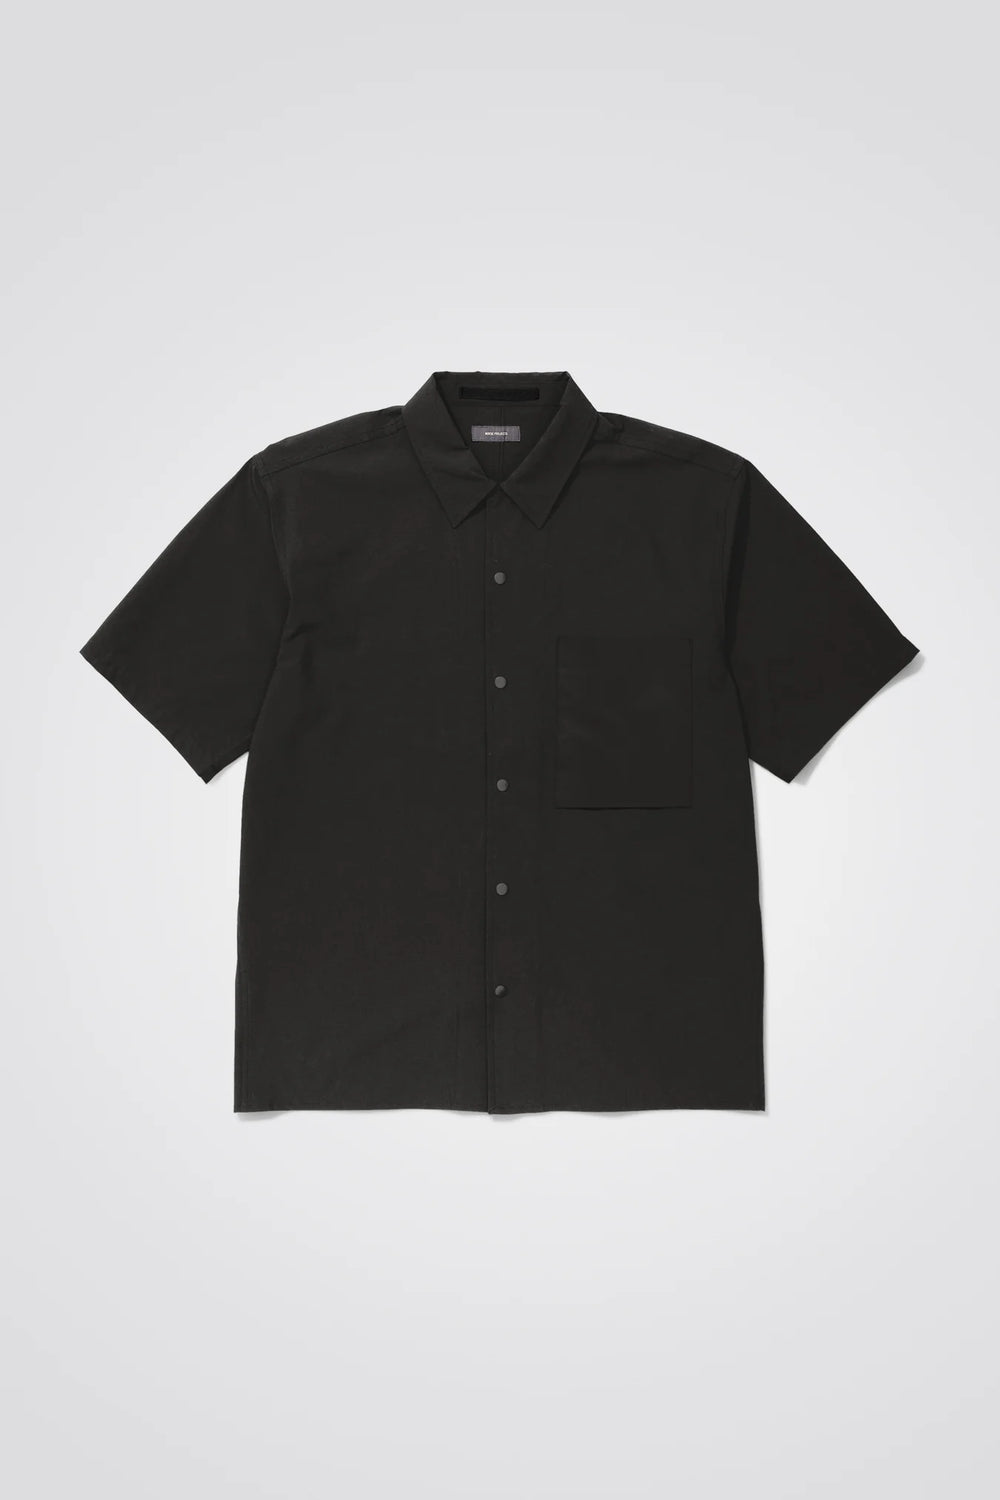 Carsten Travel Light Shirt - Black